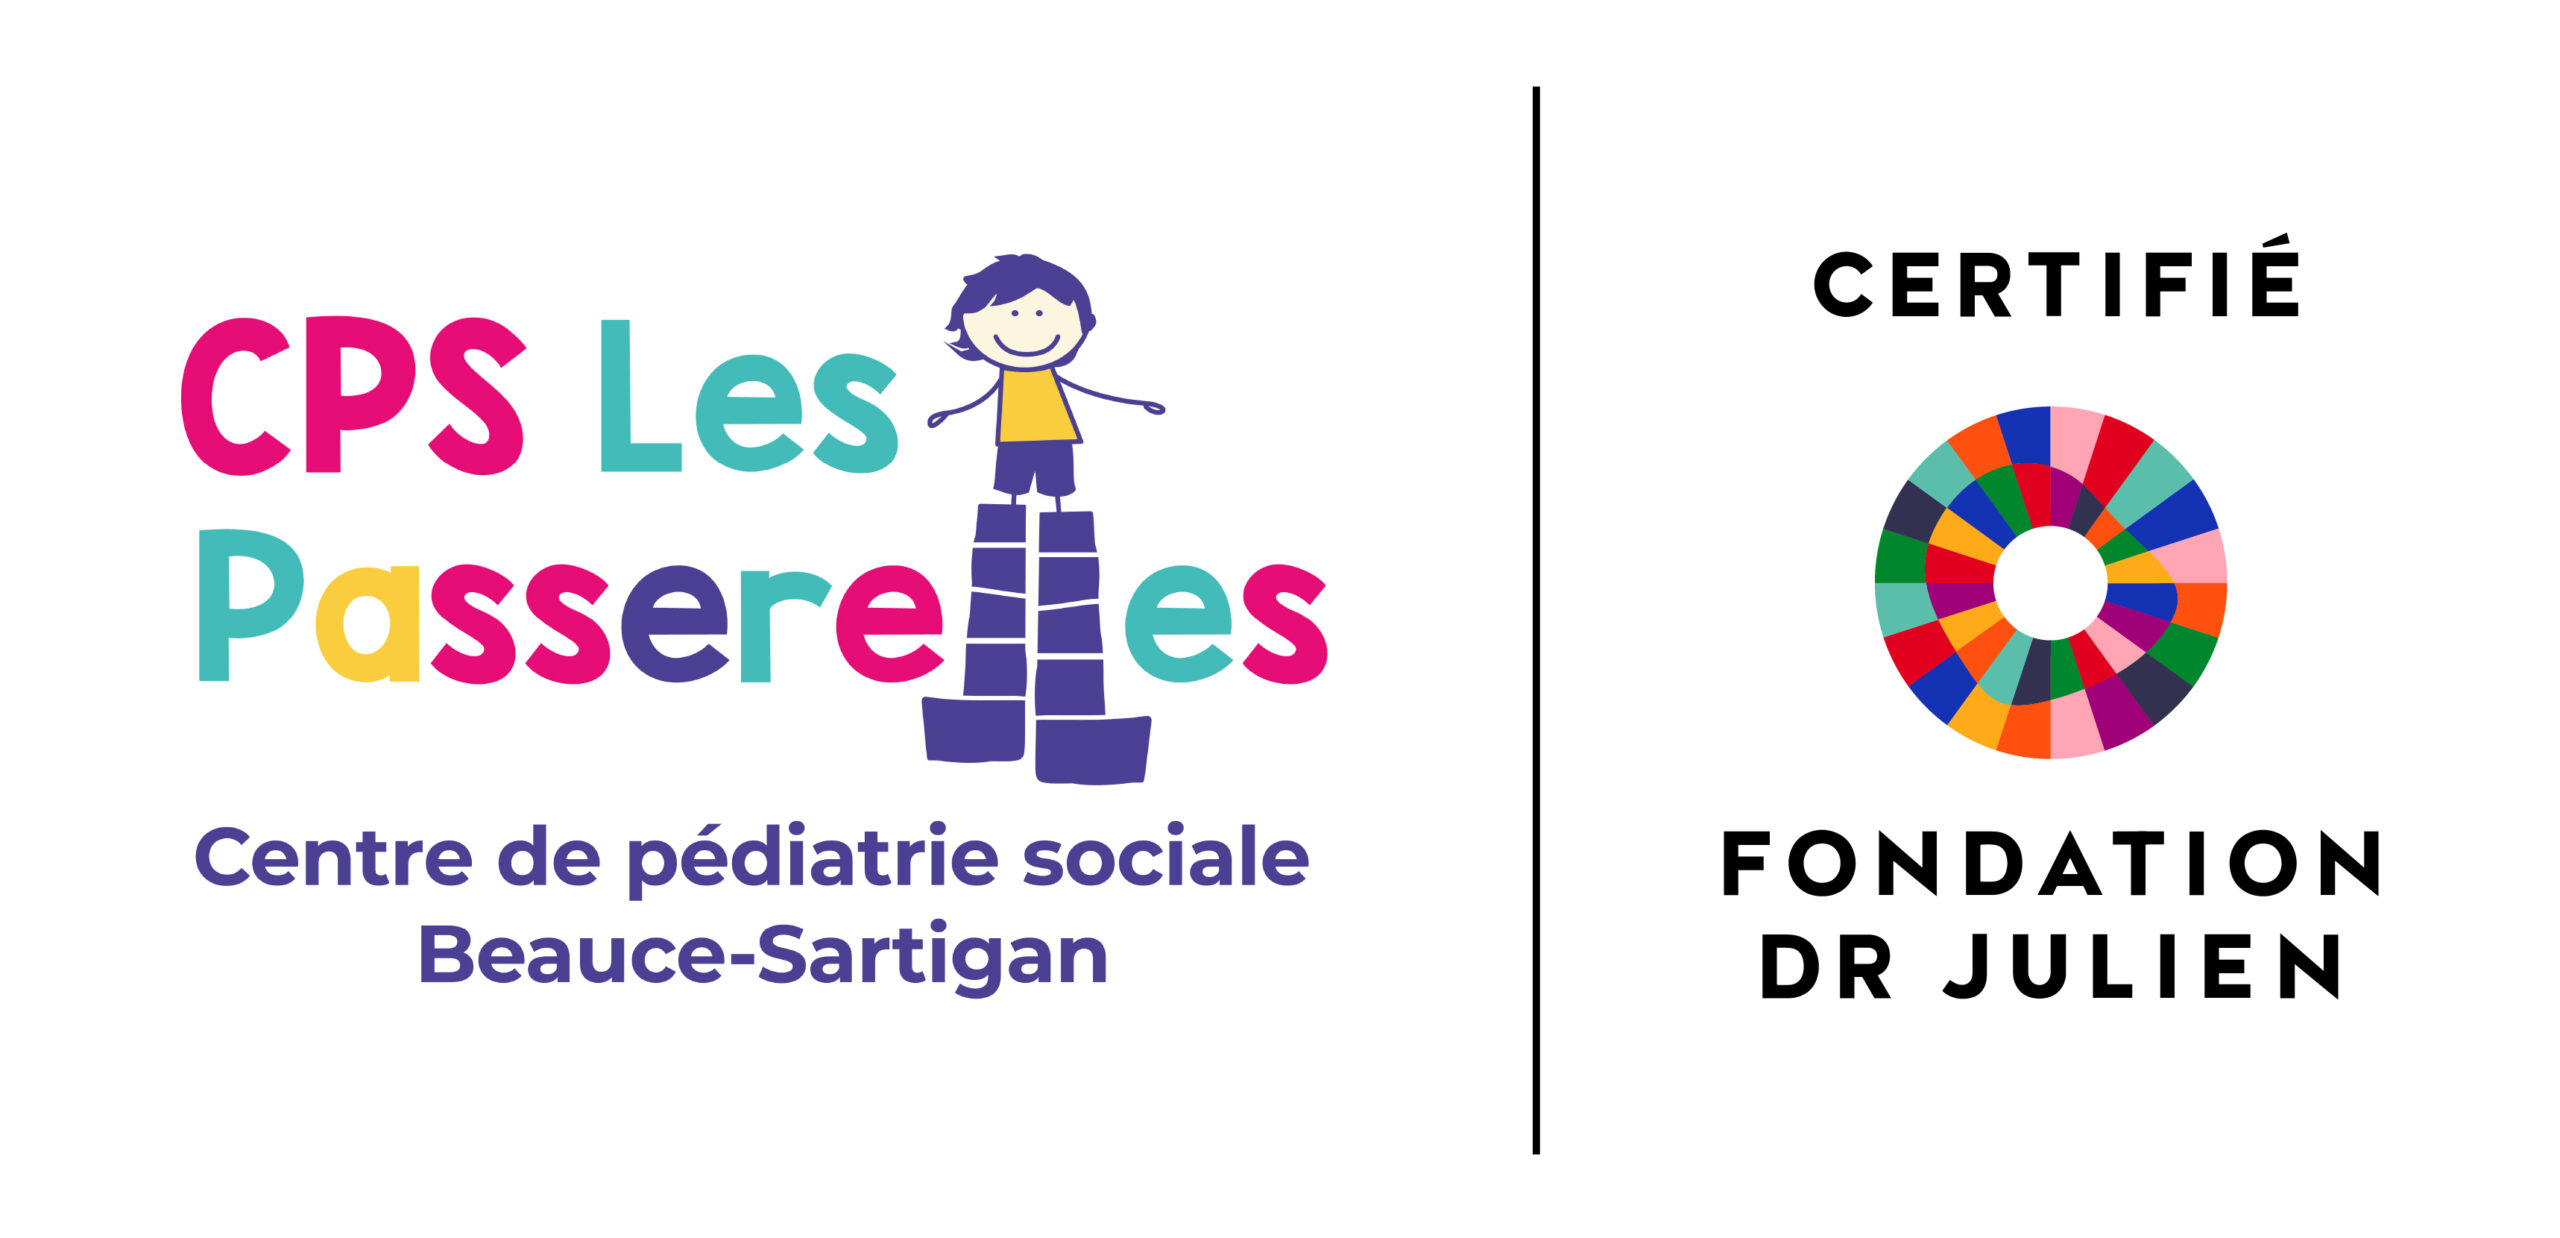 Le CPS Les Passerelles obtient son premier niveau de certification de la Fondation du Dr Julien